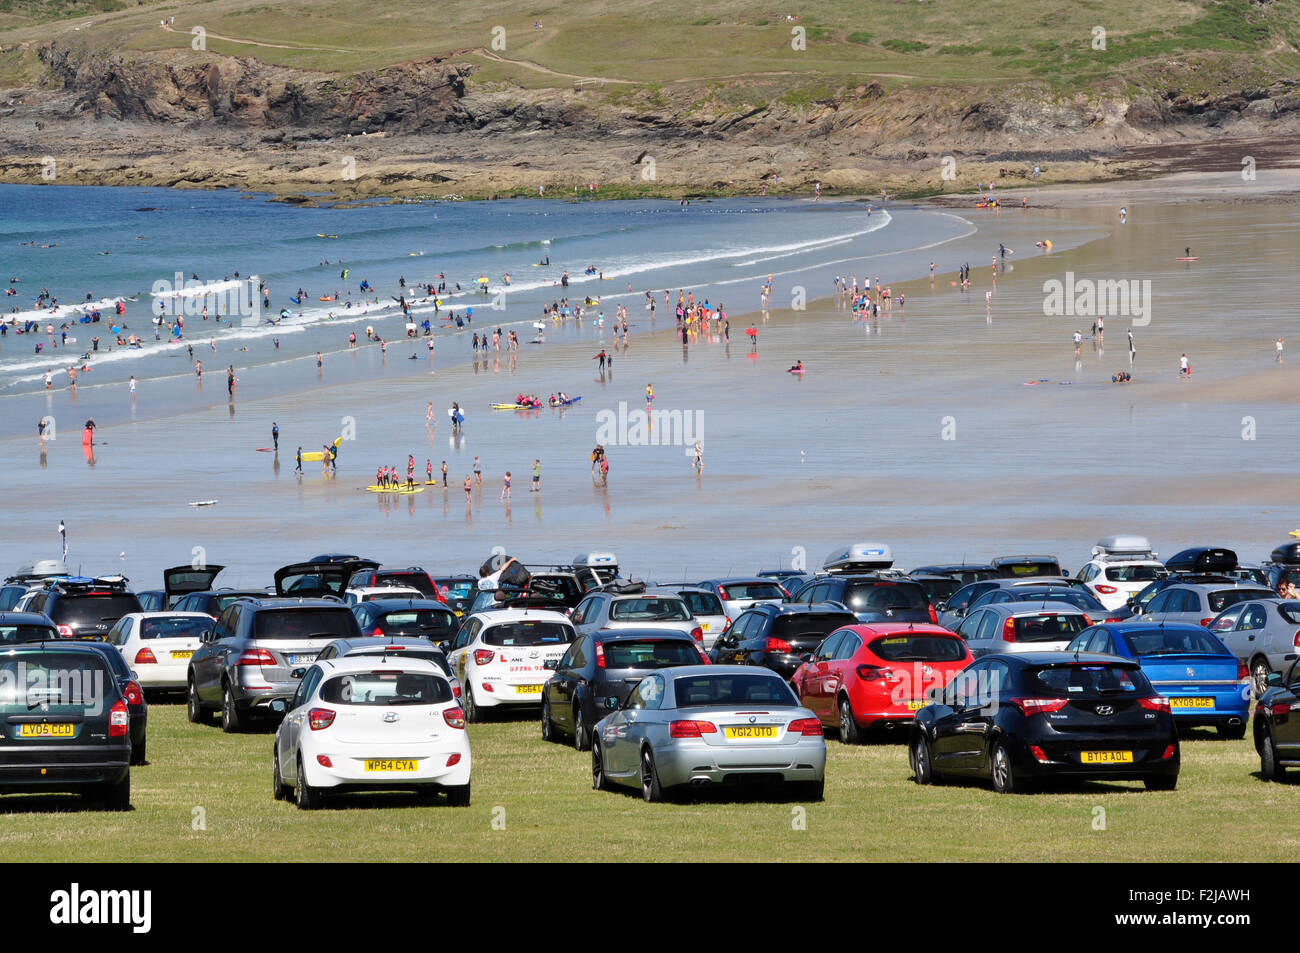 Cornouailles du nord - Polzeath falaise - parking endroit populaire - voir plus de voitures aux surfers beach - blanc - surfers - sun Banque D'Images